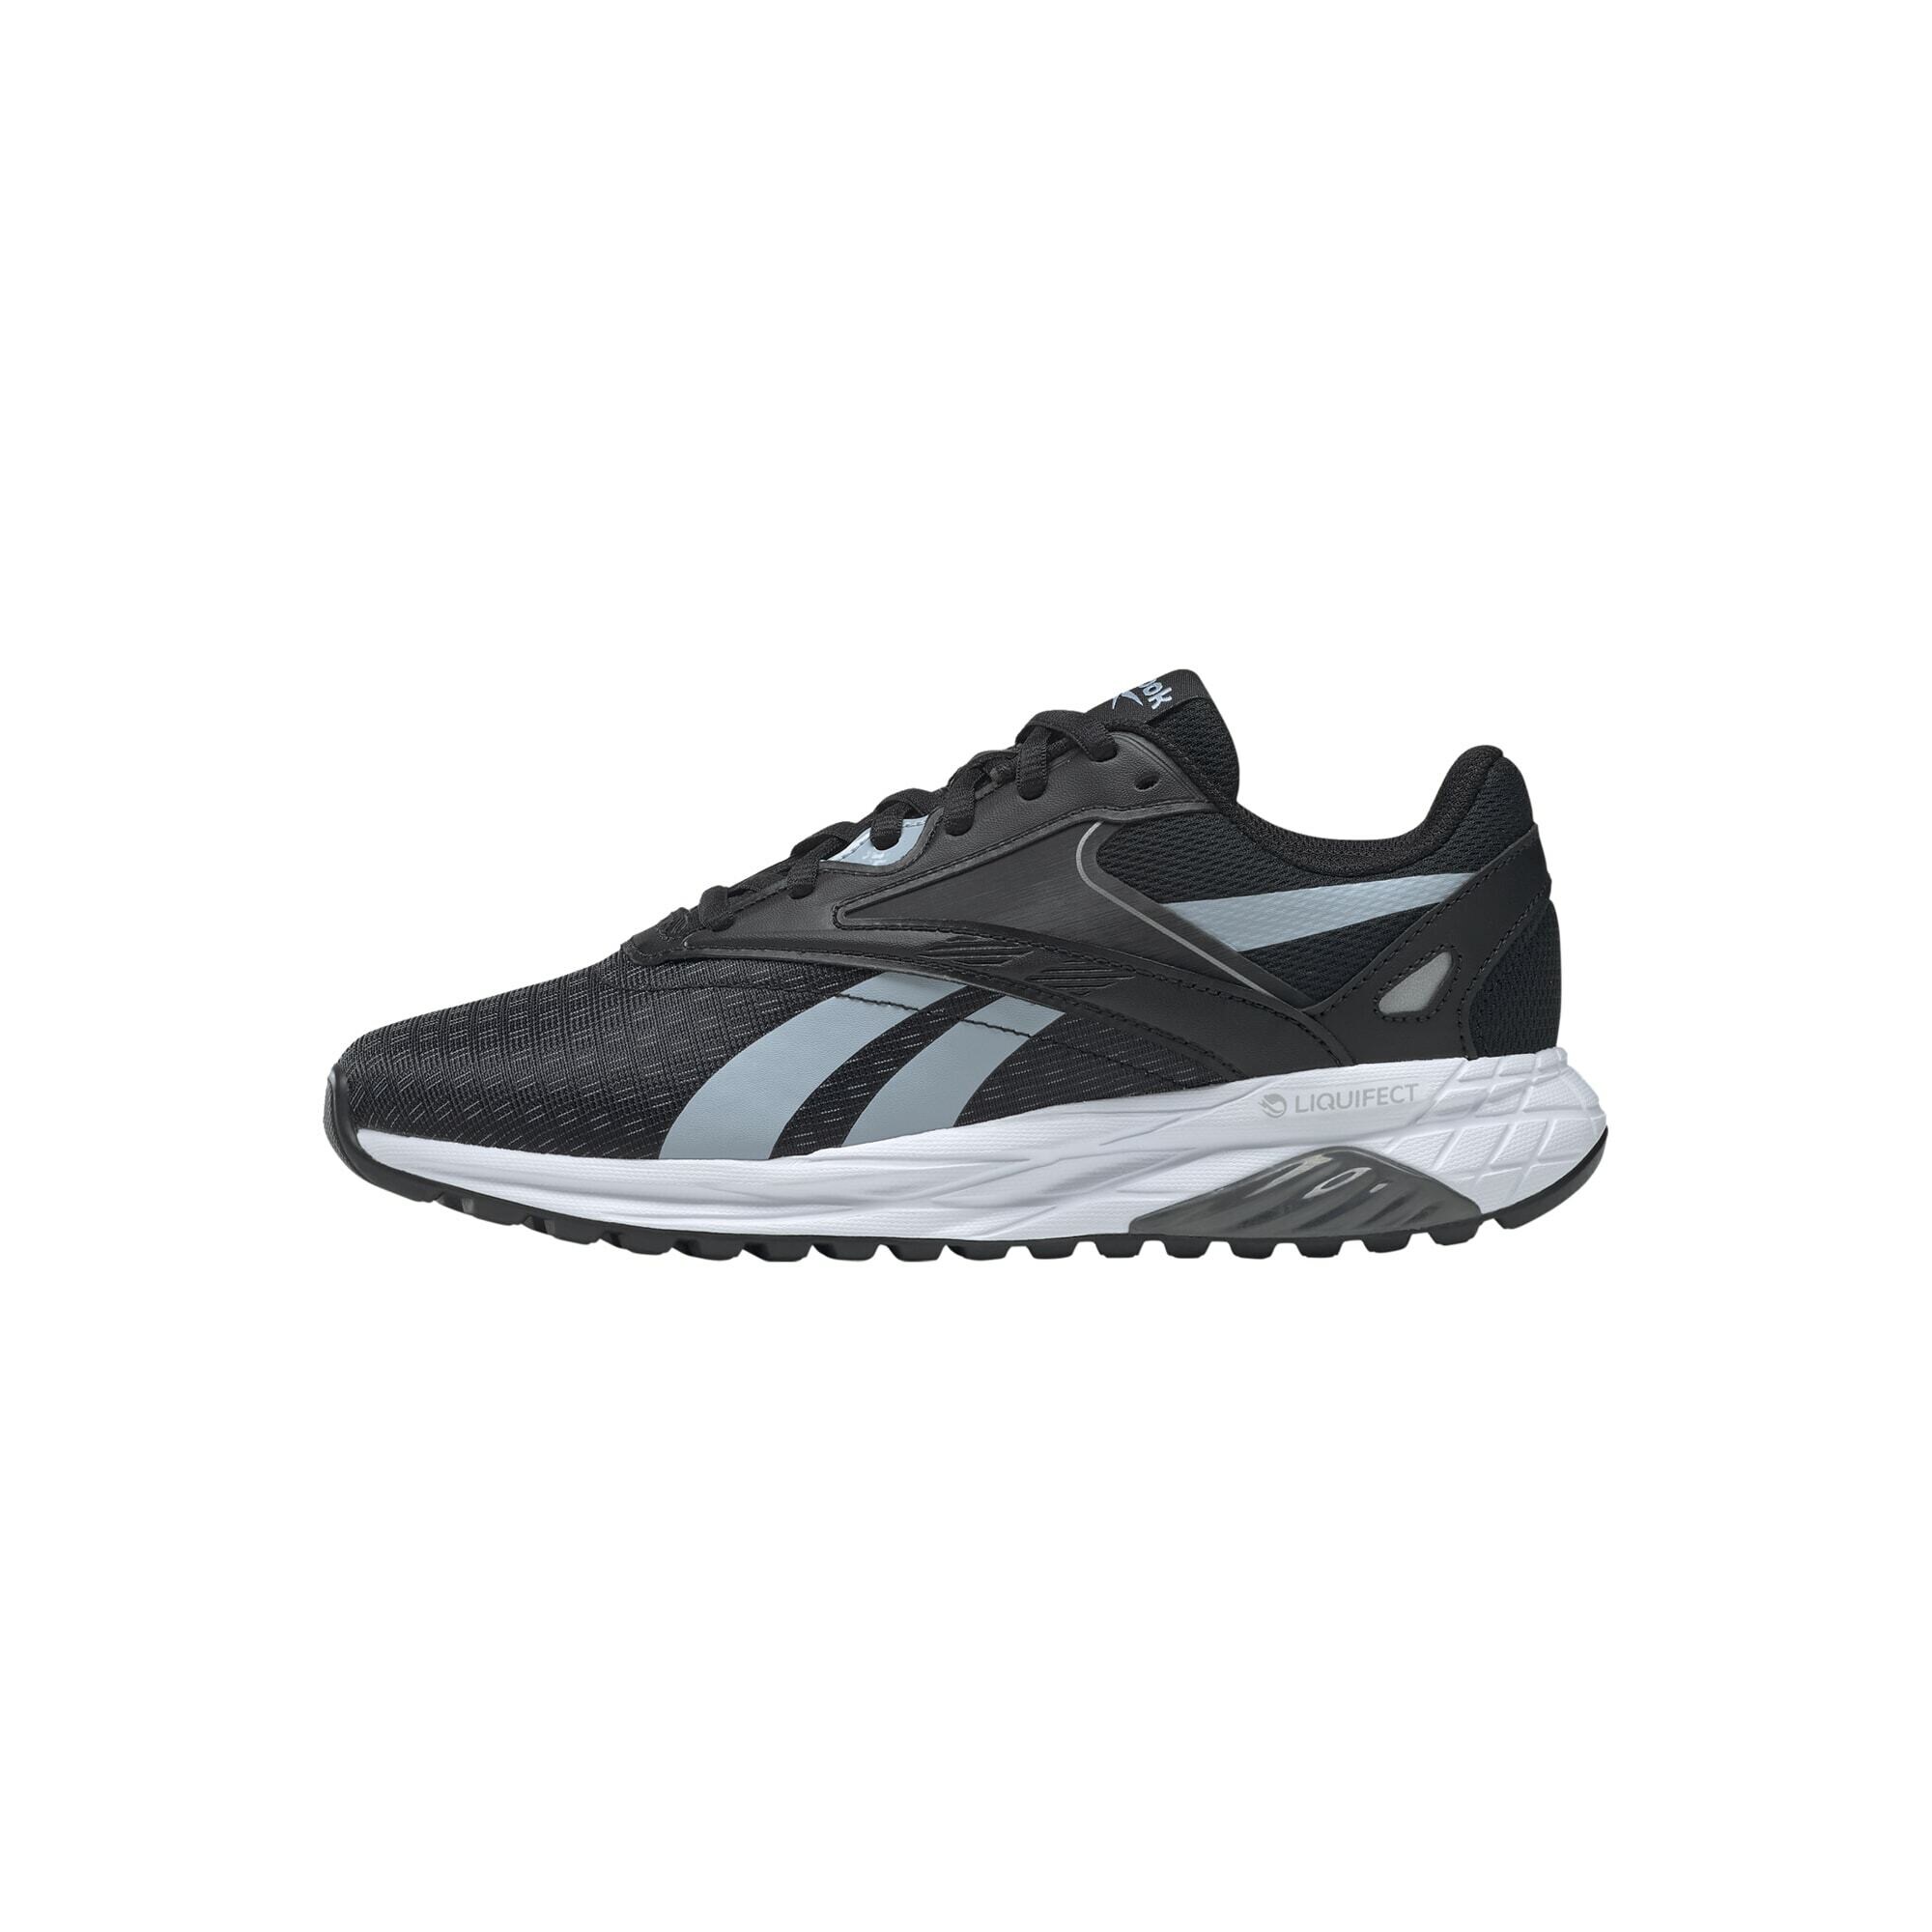 Reebok Sport Bėgimo batai 'Liquifect 90' juoda / šviesiai mėlyna